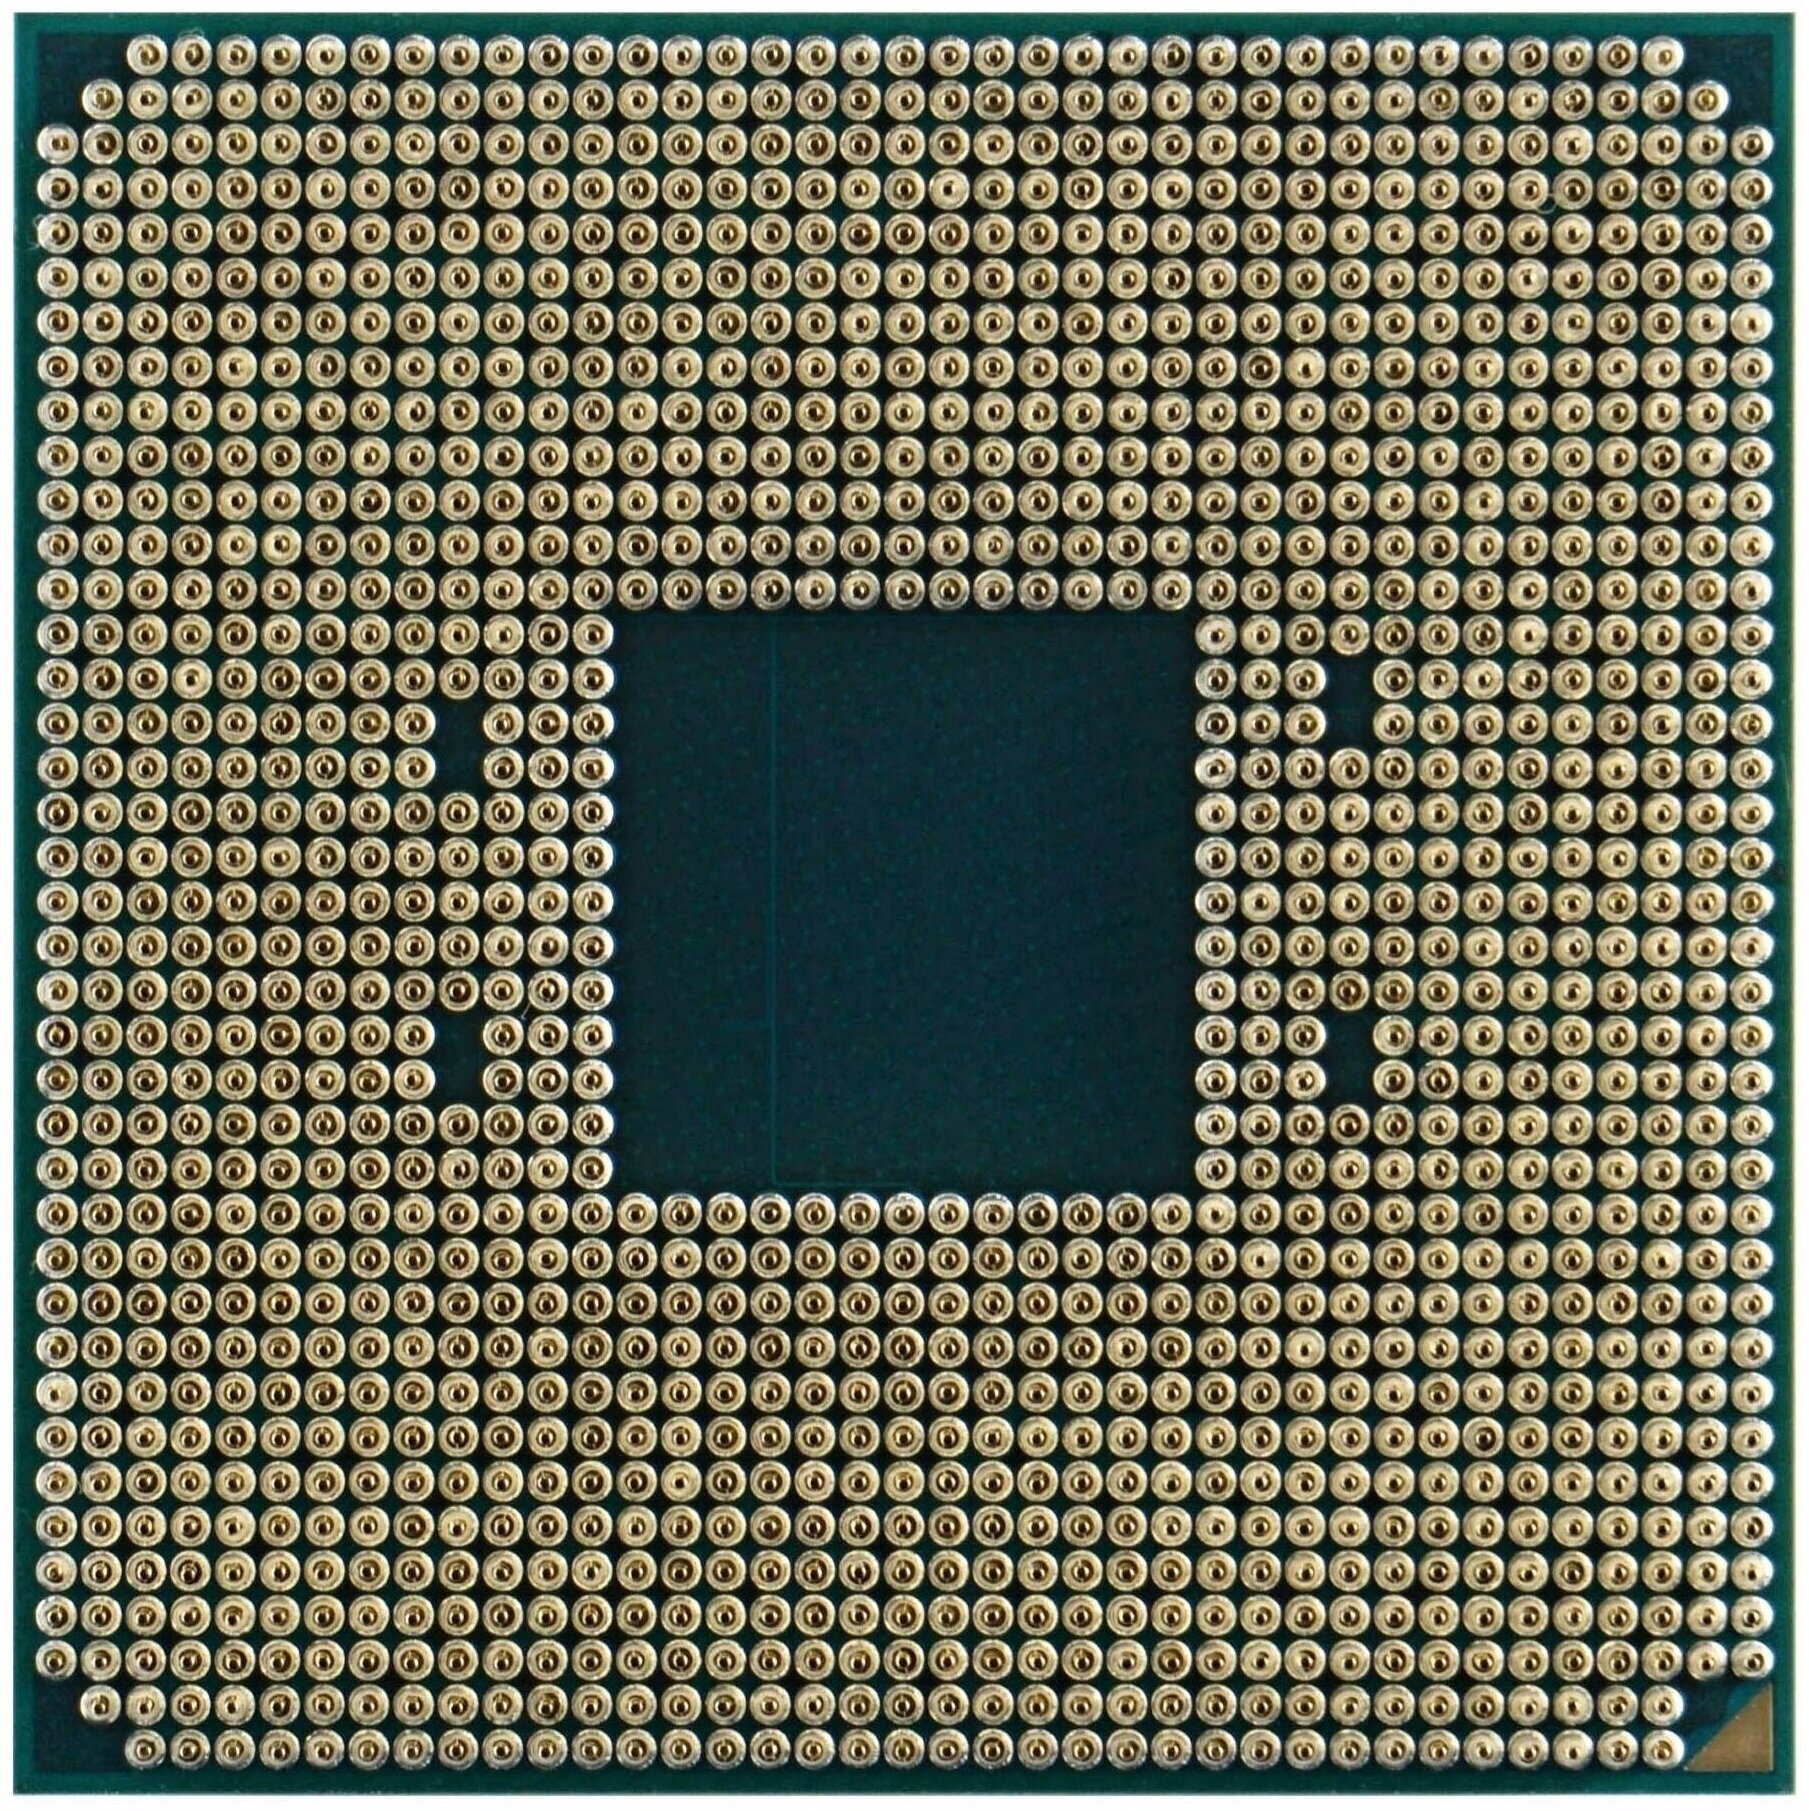 Процессор AMD Ryzen 9 3900 AM4 12 x 3100 МГц